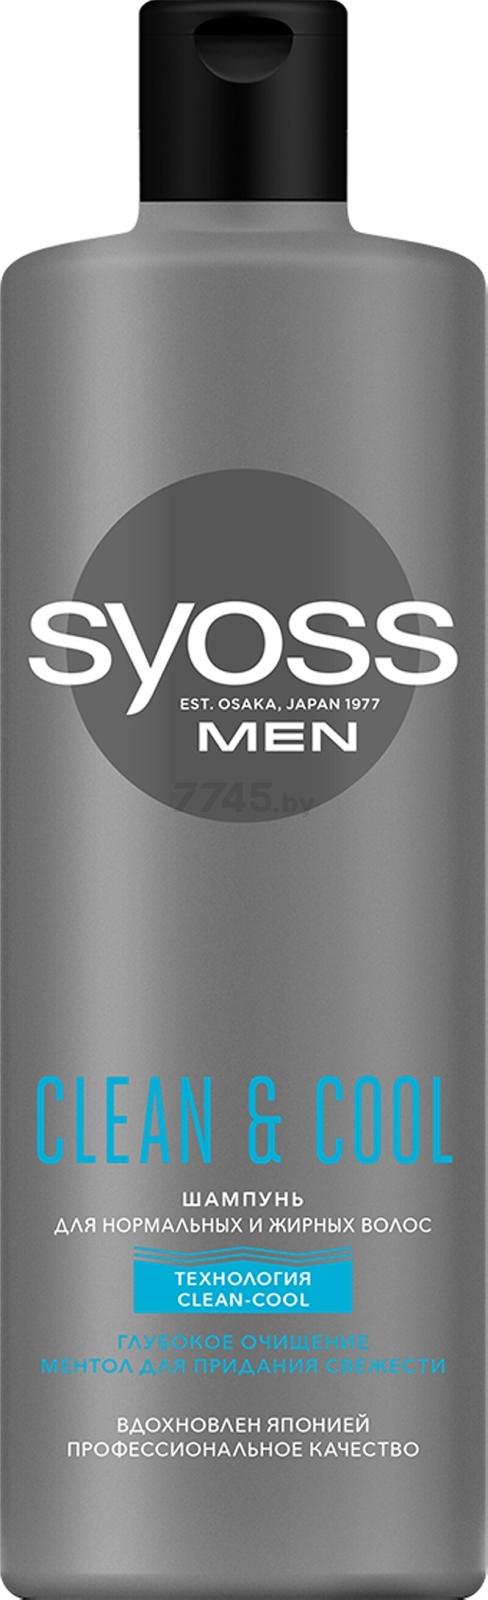 Шампунь SYOSS Men Clean & Cool Для нормальных и жирных волос 450 мл (4015100336009) - Фото 3